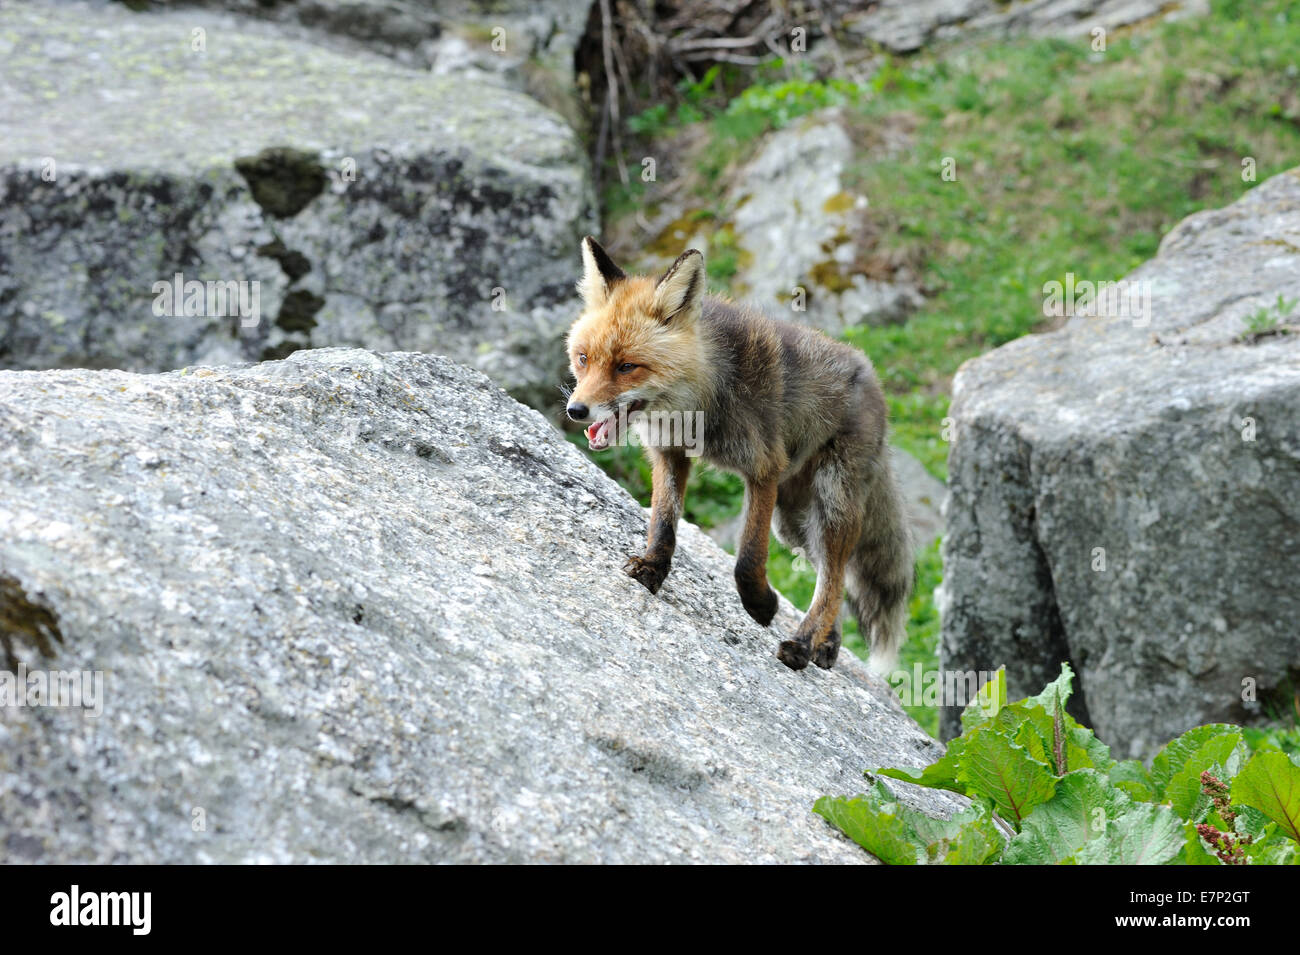 Red Fox, Fox, prédateur, les canidés, Crafty, Renard, Vulpes vulpes, le renard, animal, animal sauvage, les animaux, Allemagne Banque D'Images